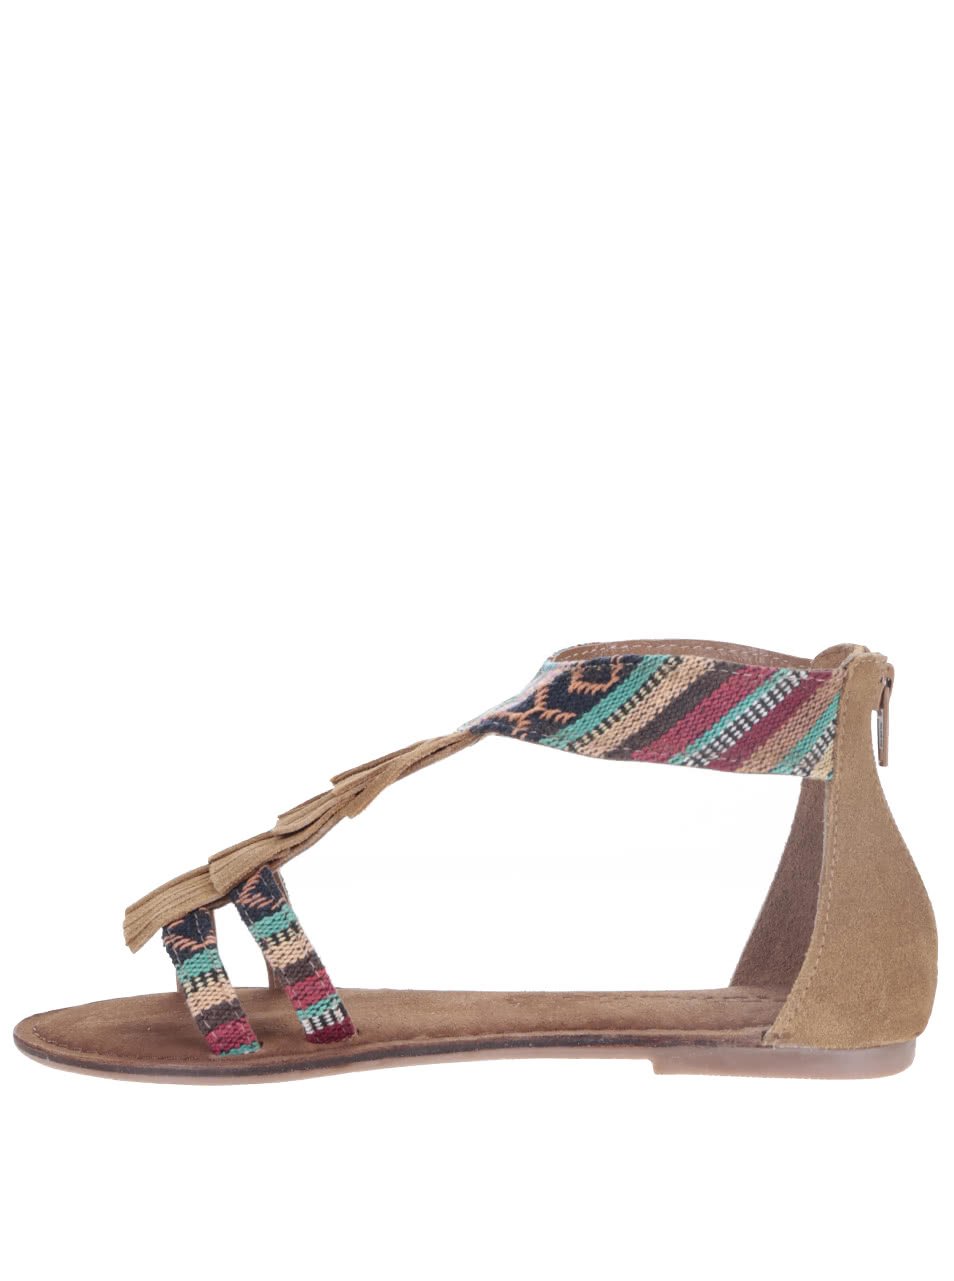 Hnědé kožené sandály s barevnými vzory Tamaris